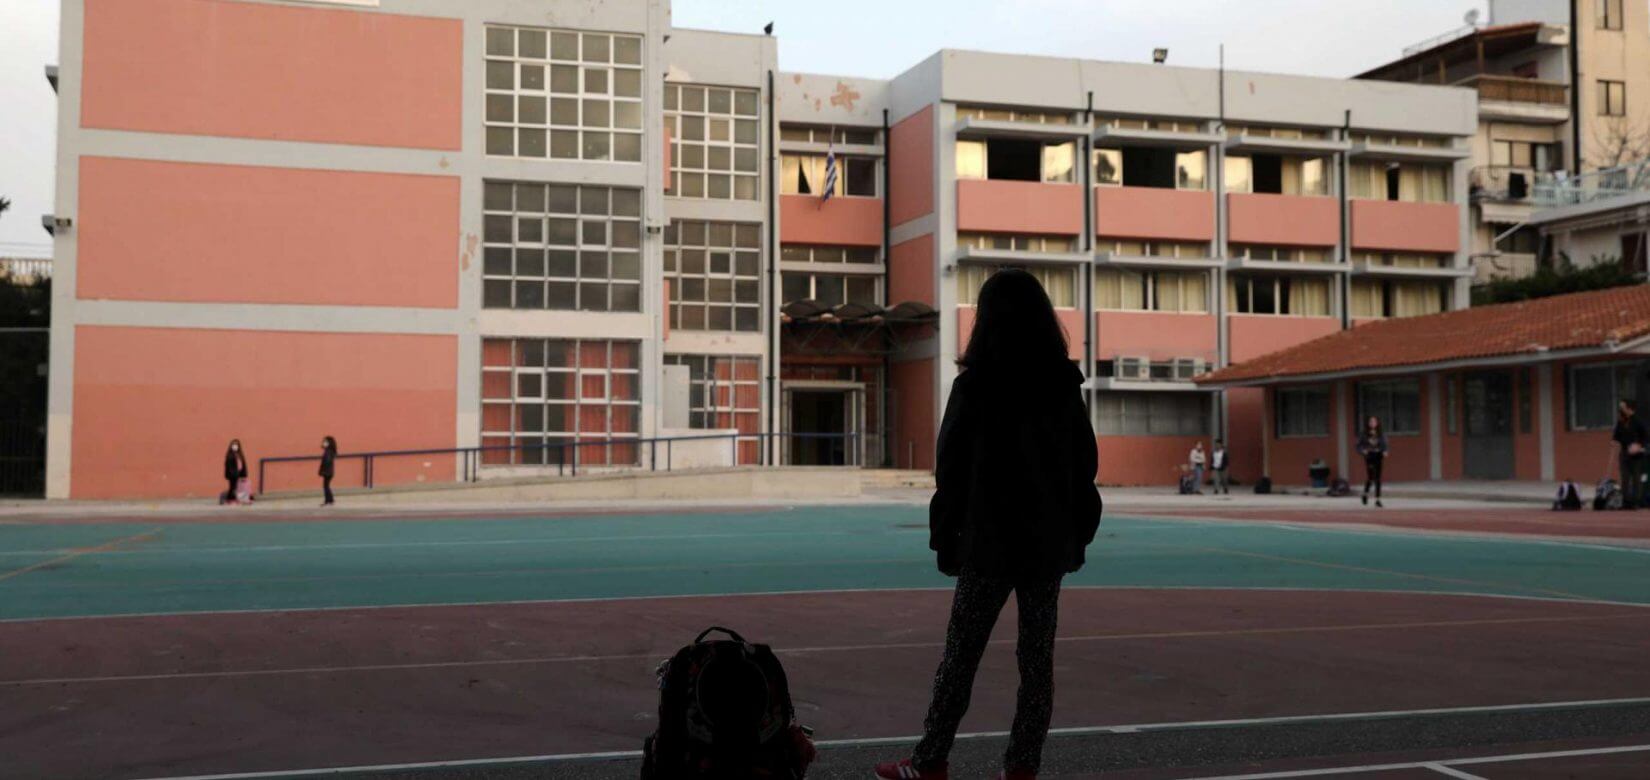 Πέραμα: Πώς έπεσε η 14χρονη από τον 3ο όροφο του σχολείου - «Ακούσαμε ένα μπαμ» λέει συμμαθήτριά της